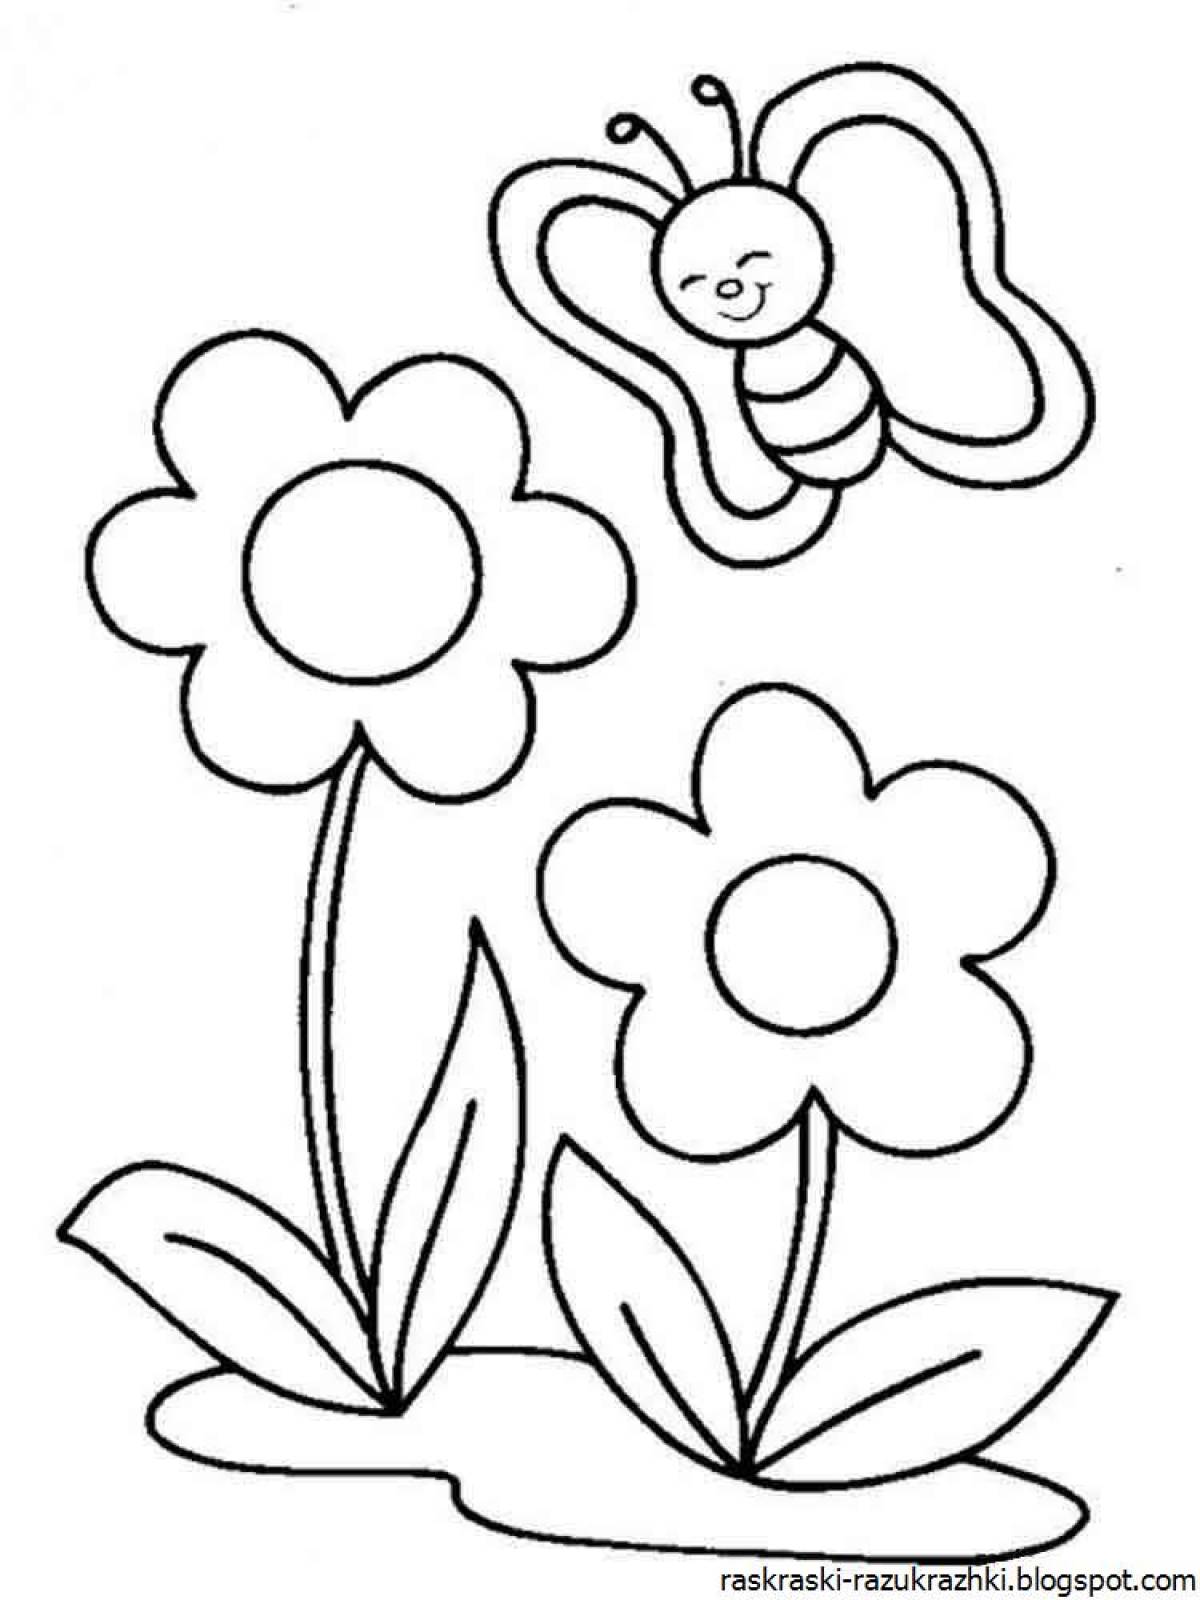 Очаровательная раскраска цветок для детей 3-4 лет